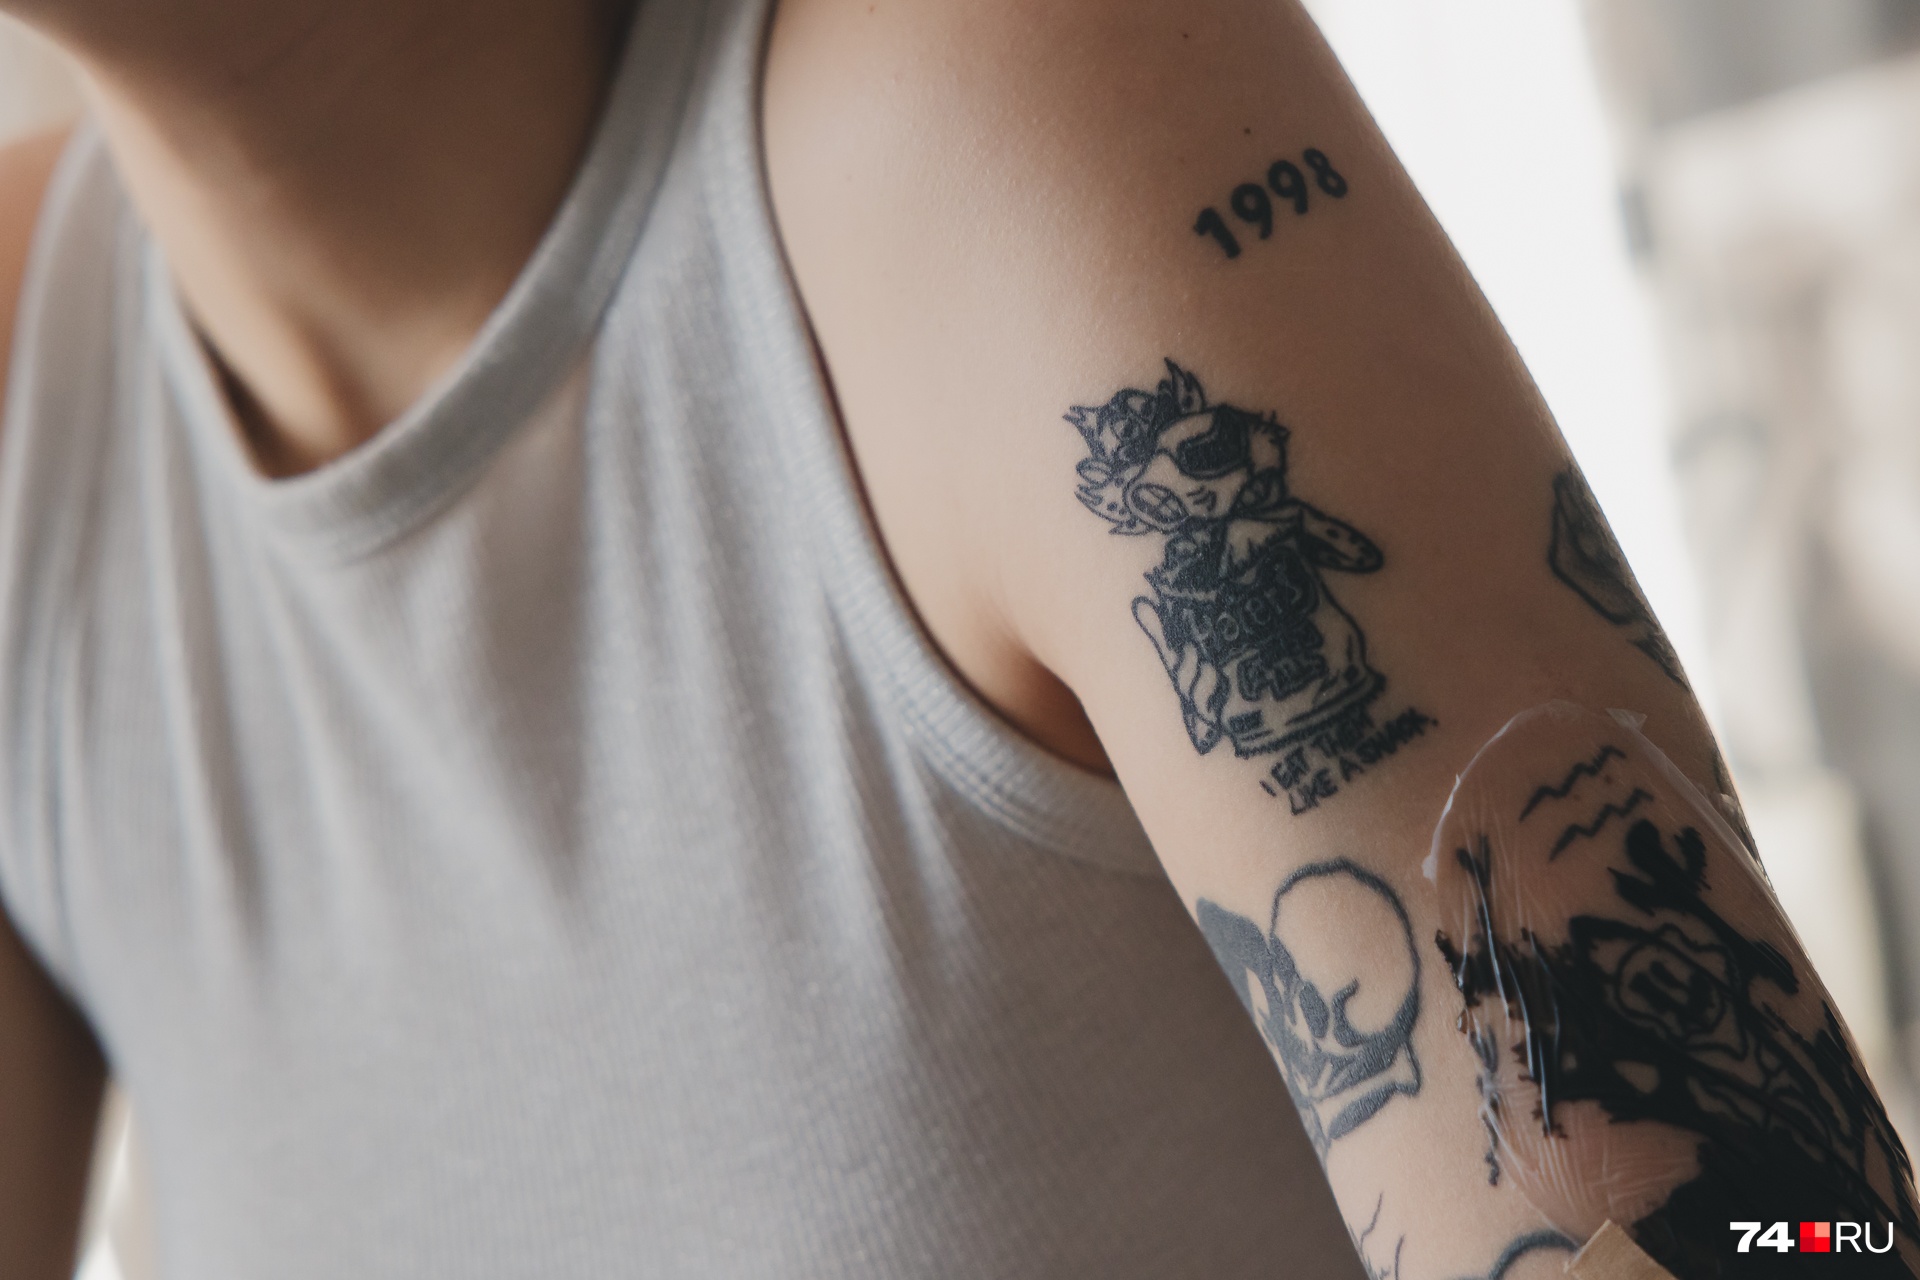 Молодость — время делать татуировки: на плече девушки уже выбиты год рождения, гепард из рекламы, ящерица и розы